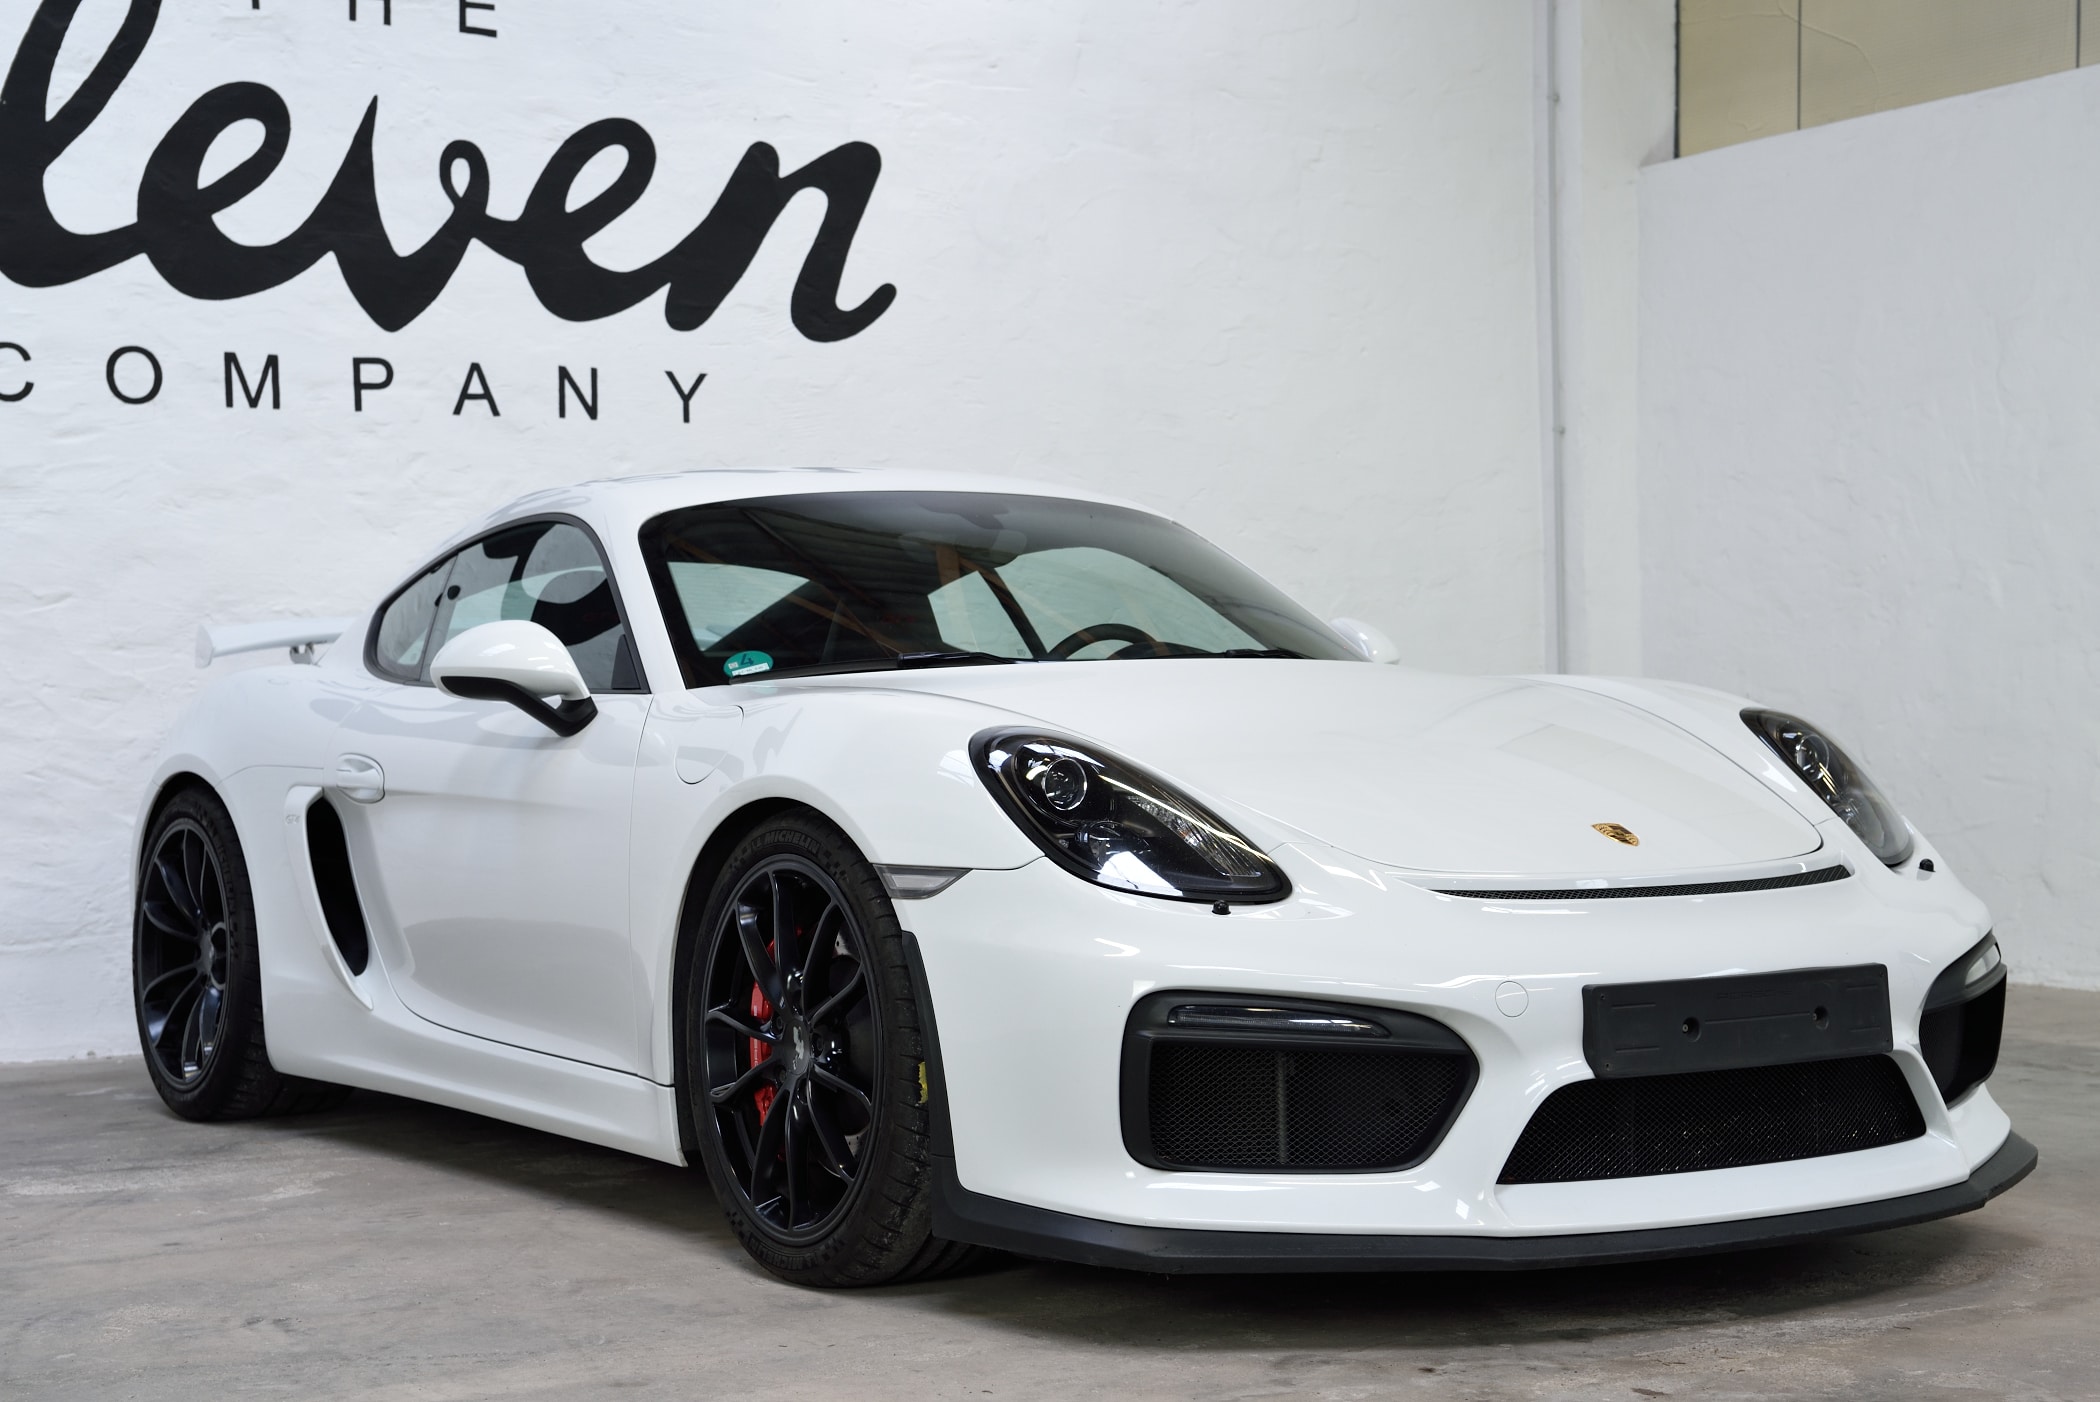 https://the11company.de/wp-content/uploads/2020/02/Porsche-Cayman-GT4-weiß-14.jpg